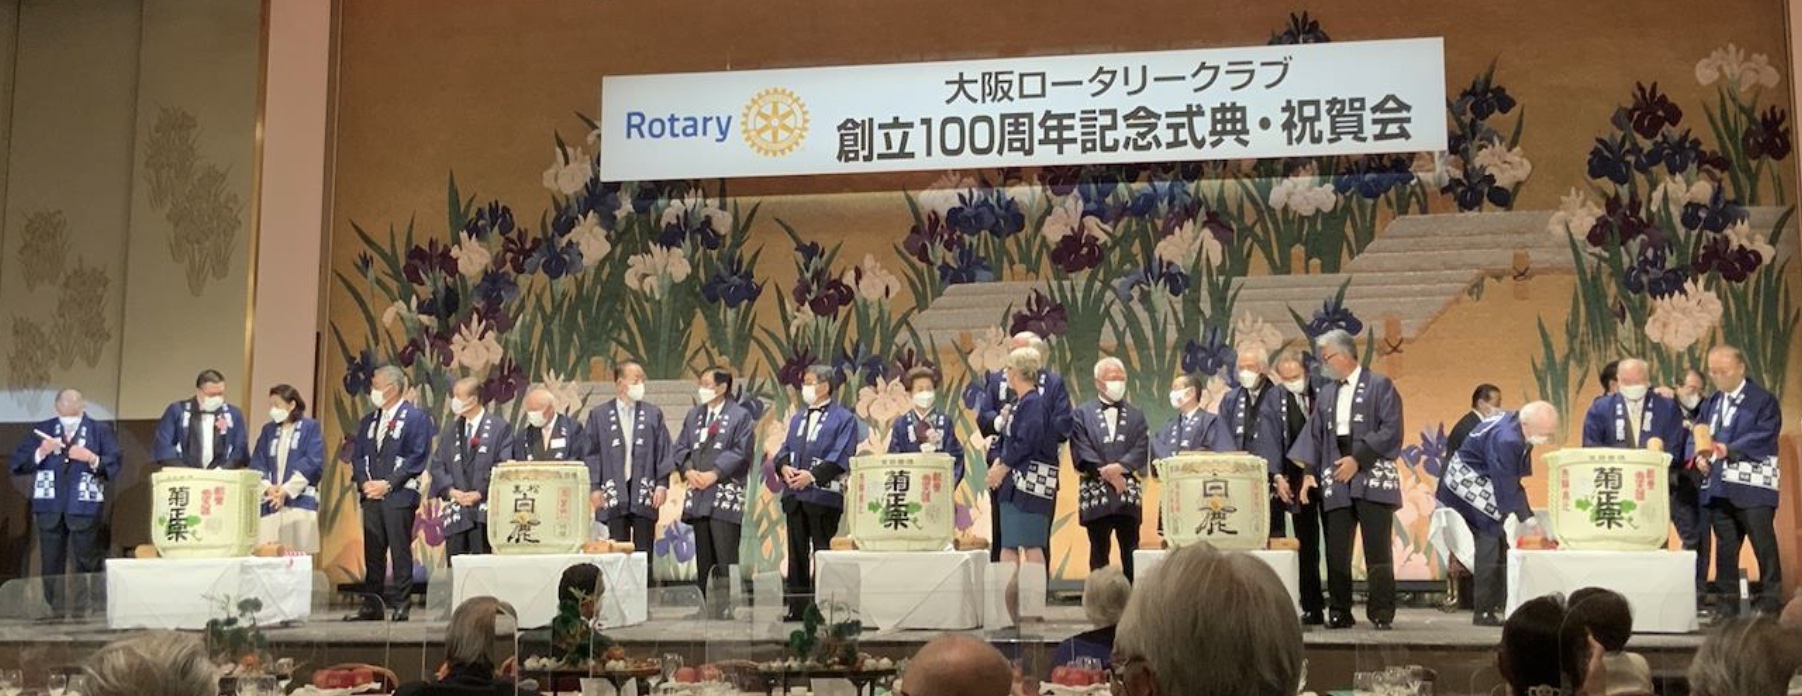 大阪ロータリークラブ創立１００周年記念式典・祝賀会